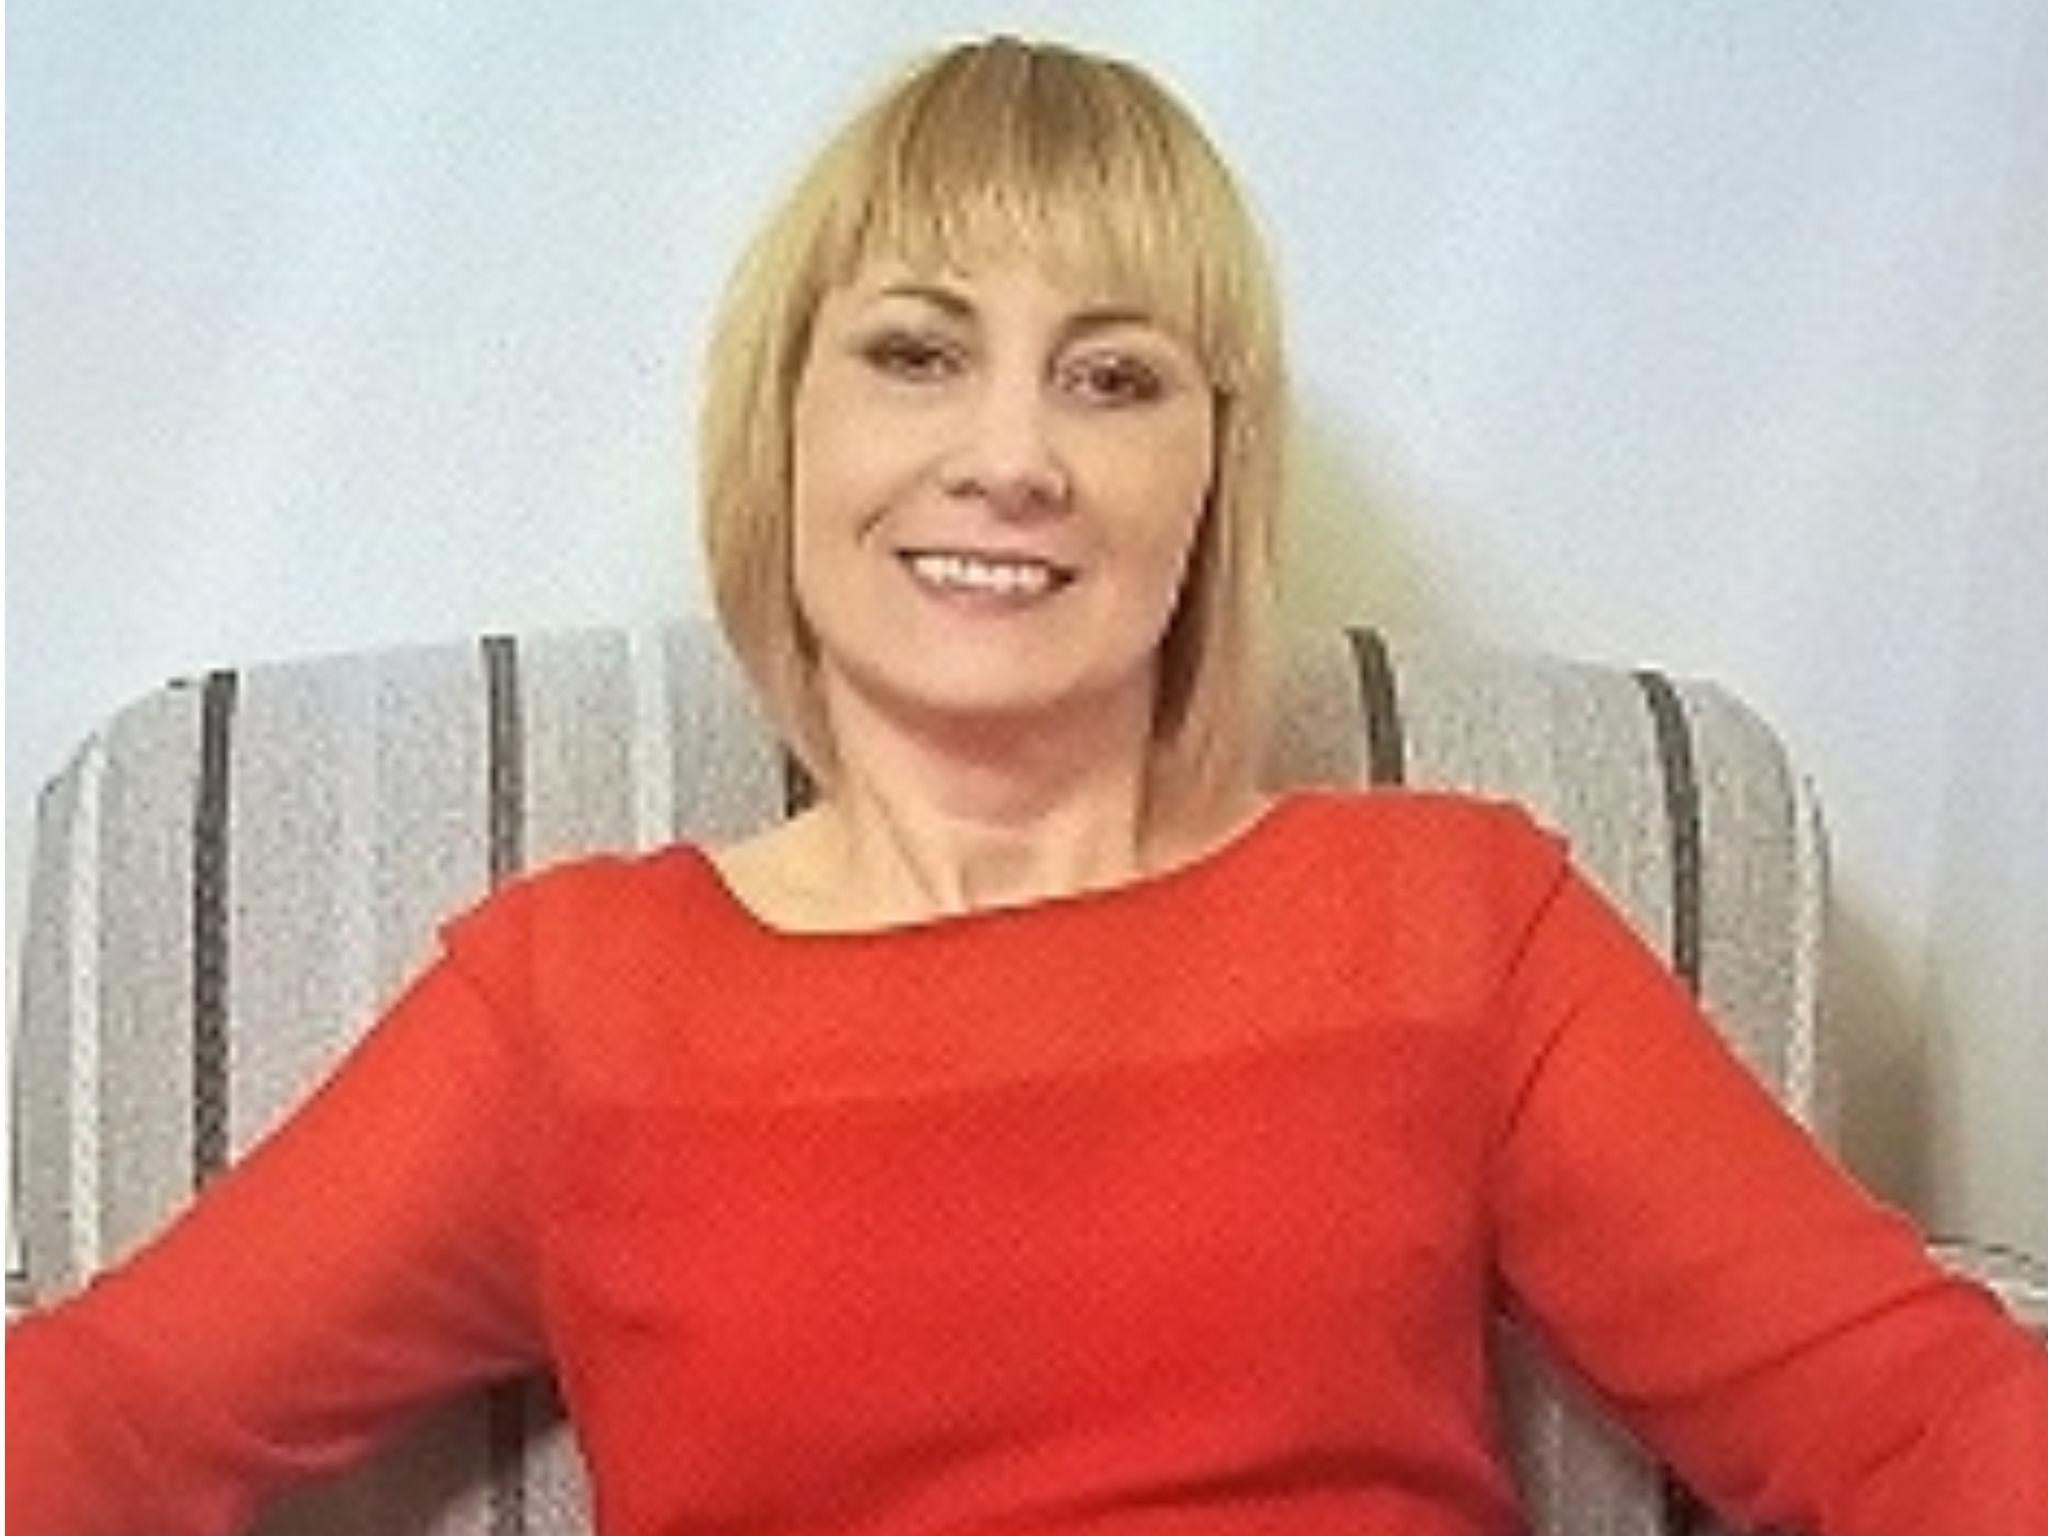 Renata Antczak has not been seen since 25 April